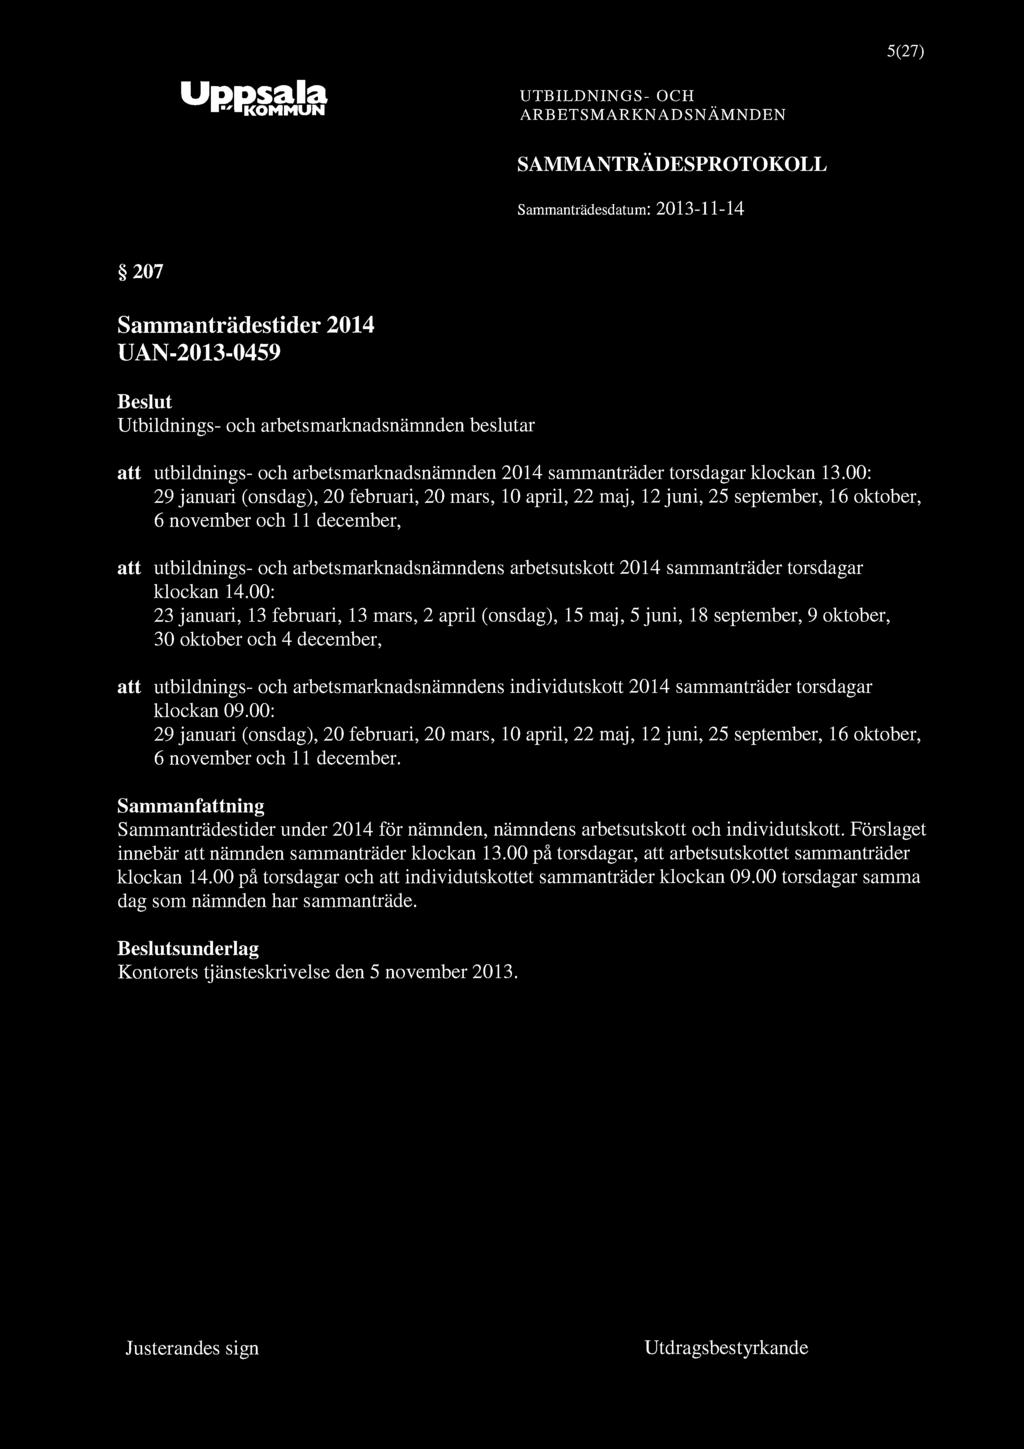 5(27) Samrnanträdesdatum: 2013-11-14 207 Sammanträdestider 2014 UAN-2013-0459 att utbildnings- och arbetsmarknadsnämnden 2014 sammanträder torsdagar klockan 13.